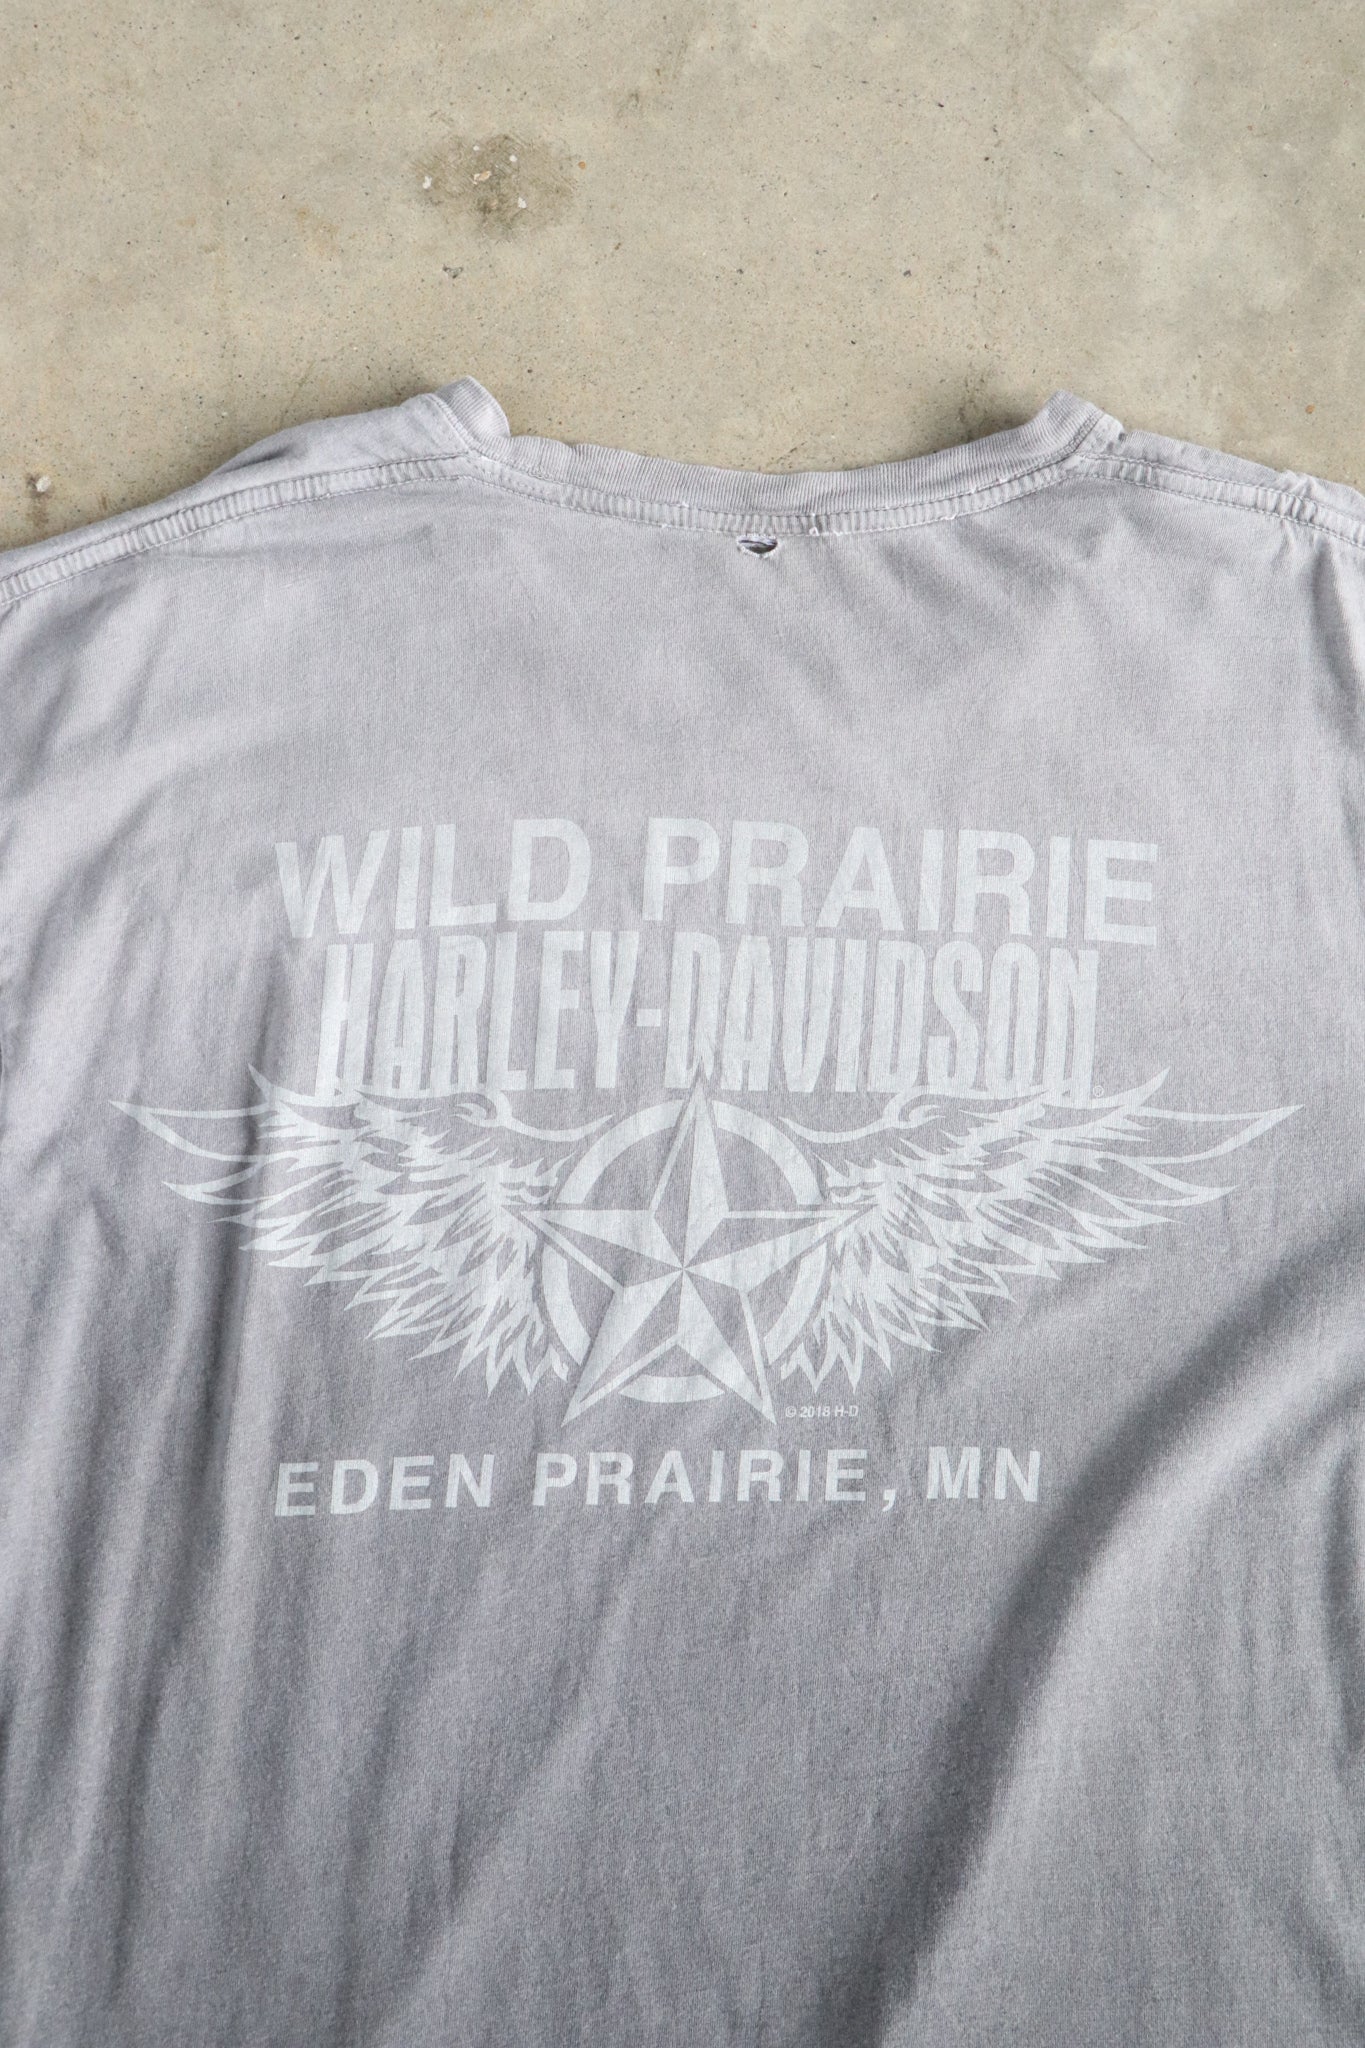 Vintage Harley Davidson Wild Prairie Tee XL